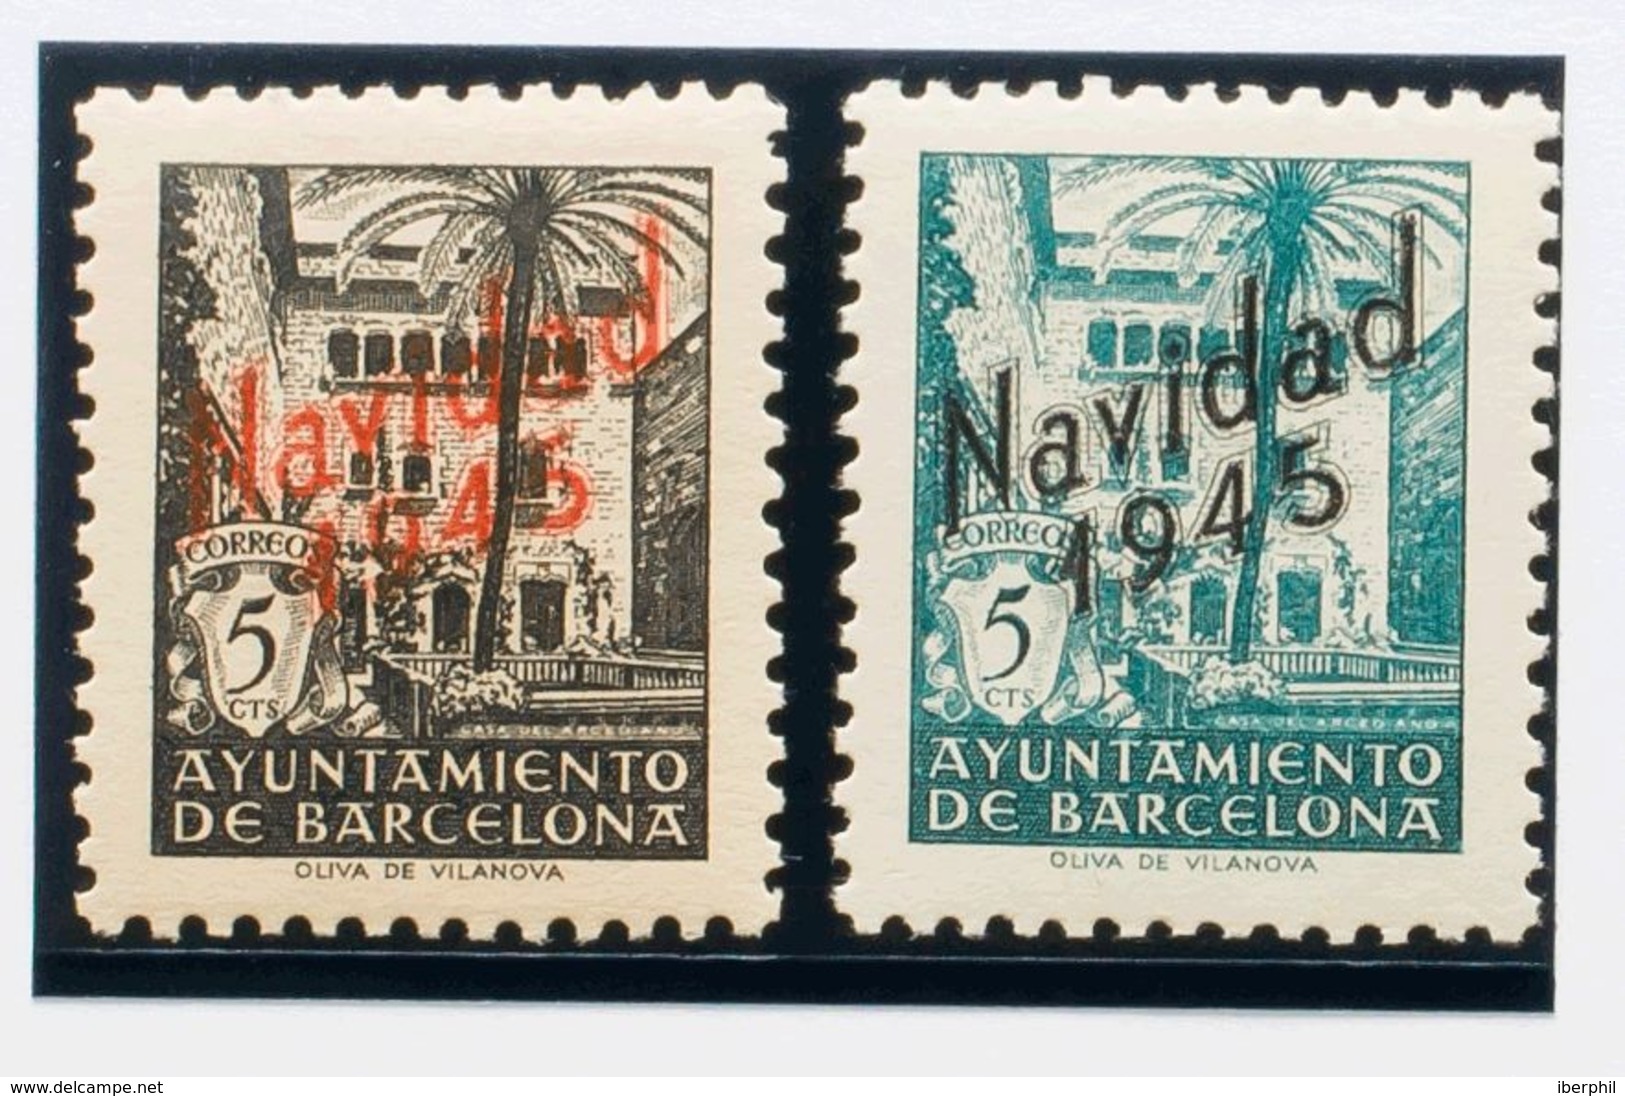 Ayuntamiento De Barcelona. **SHNE29/30. 1945. Serie Completa, Procedente De La Hoja Bloque. NO EMITIDA. MAGNIFICA. Edifi - Barcelona